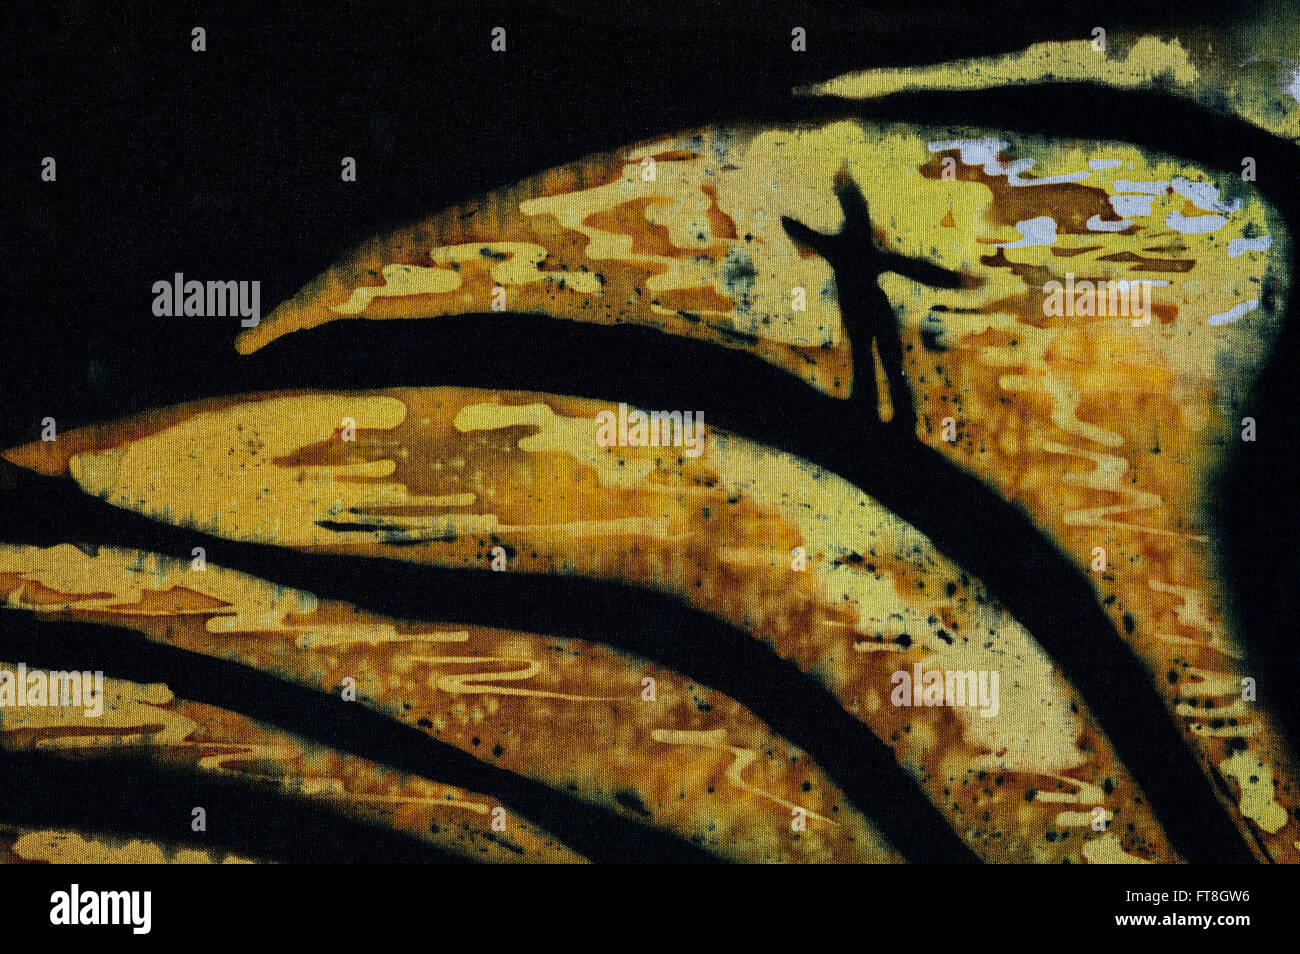 L'homme sur des terrasses de riz, fragment, hot batik, texture de fond, la main sur la soie, abstract art surréalisme Banque D'Images